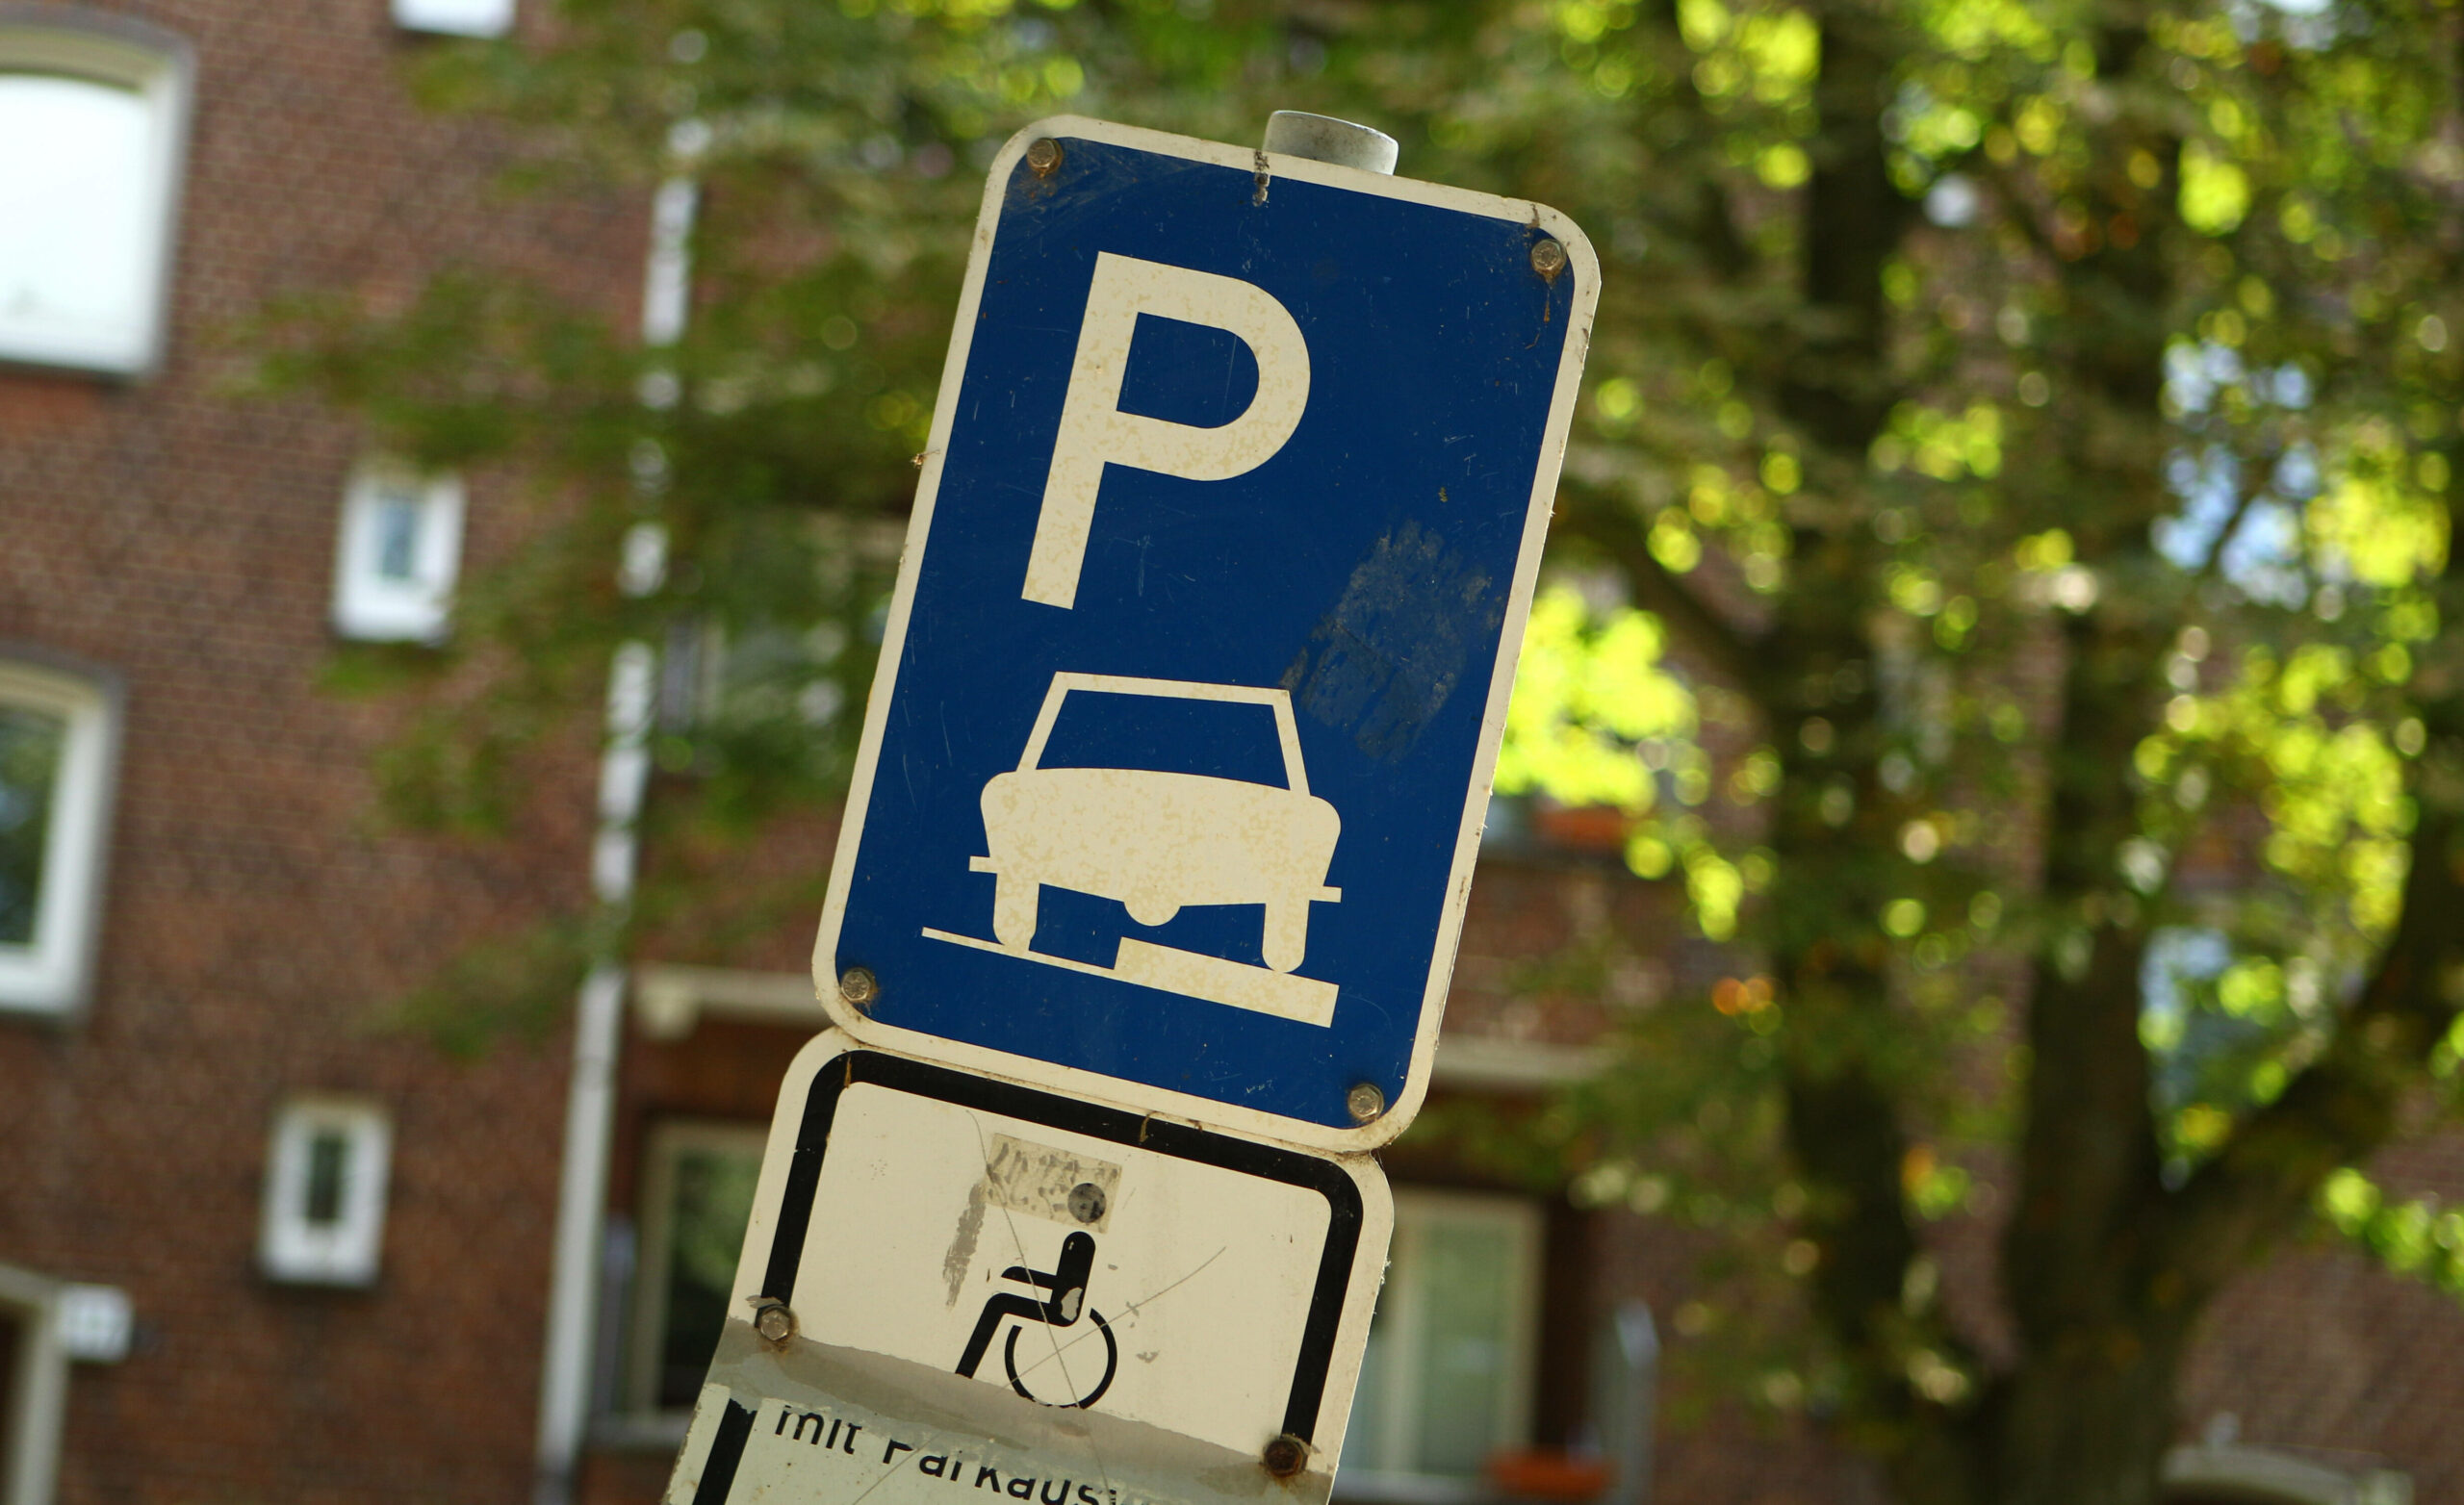 Das Parken auf Gehwegen ist nur auf Straßen mit dem vorgesehenen Verkehrszeichen erlaubt.